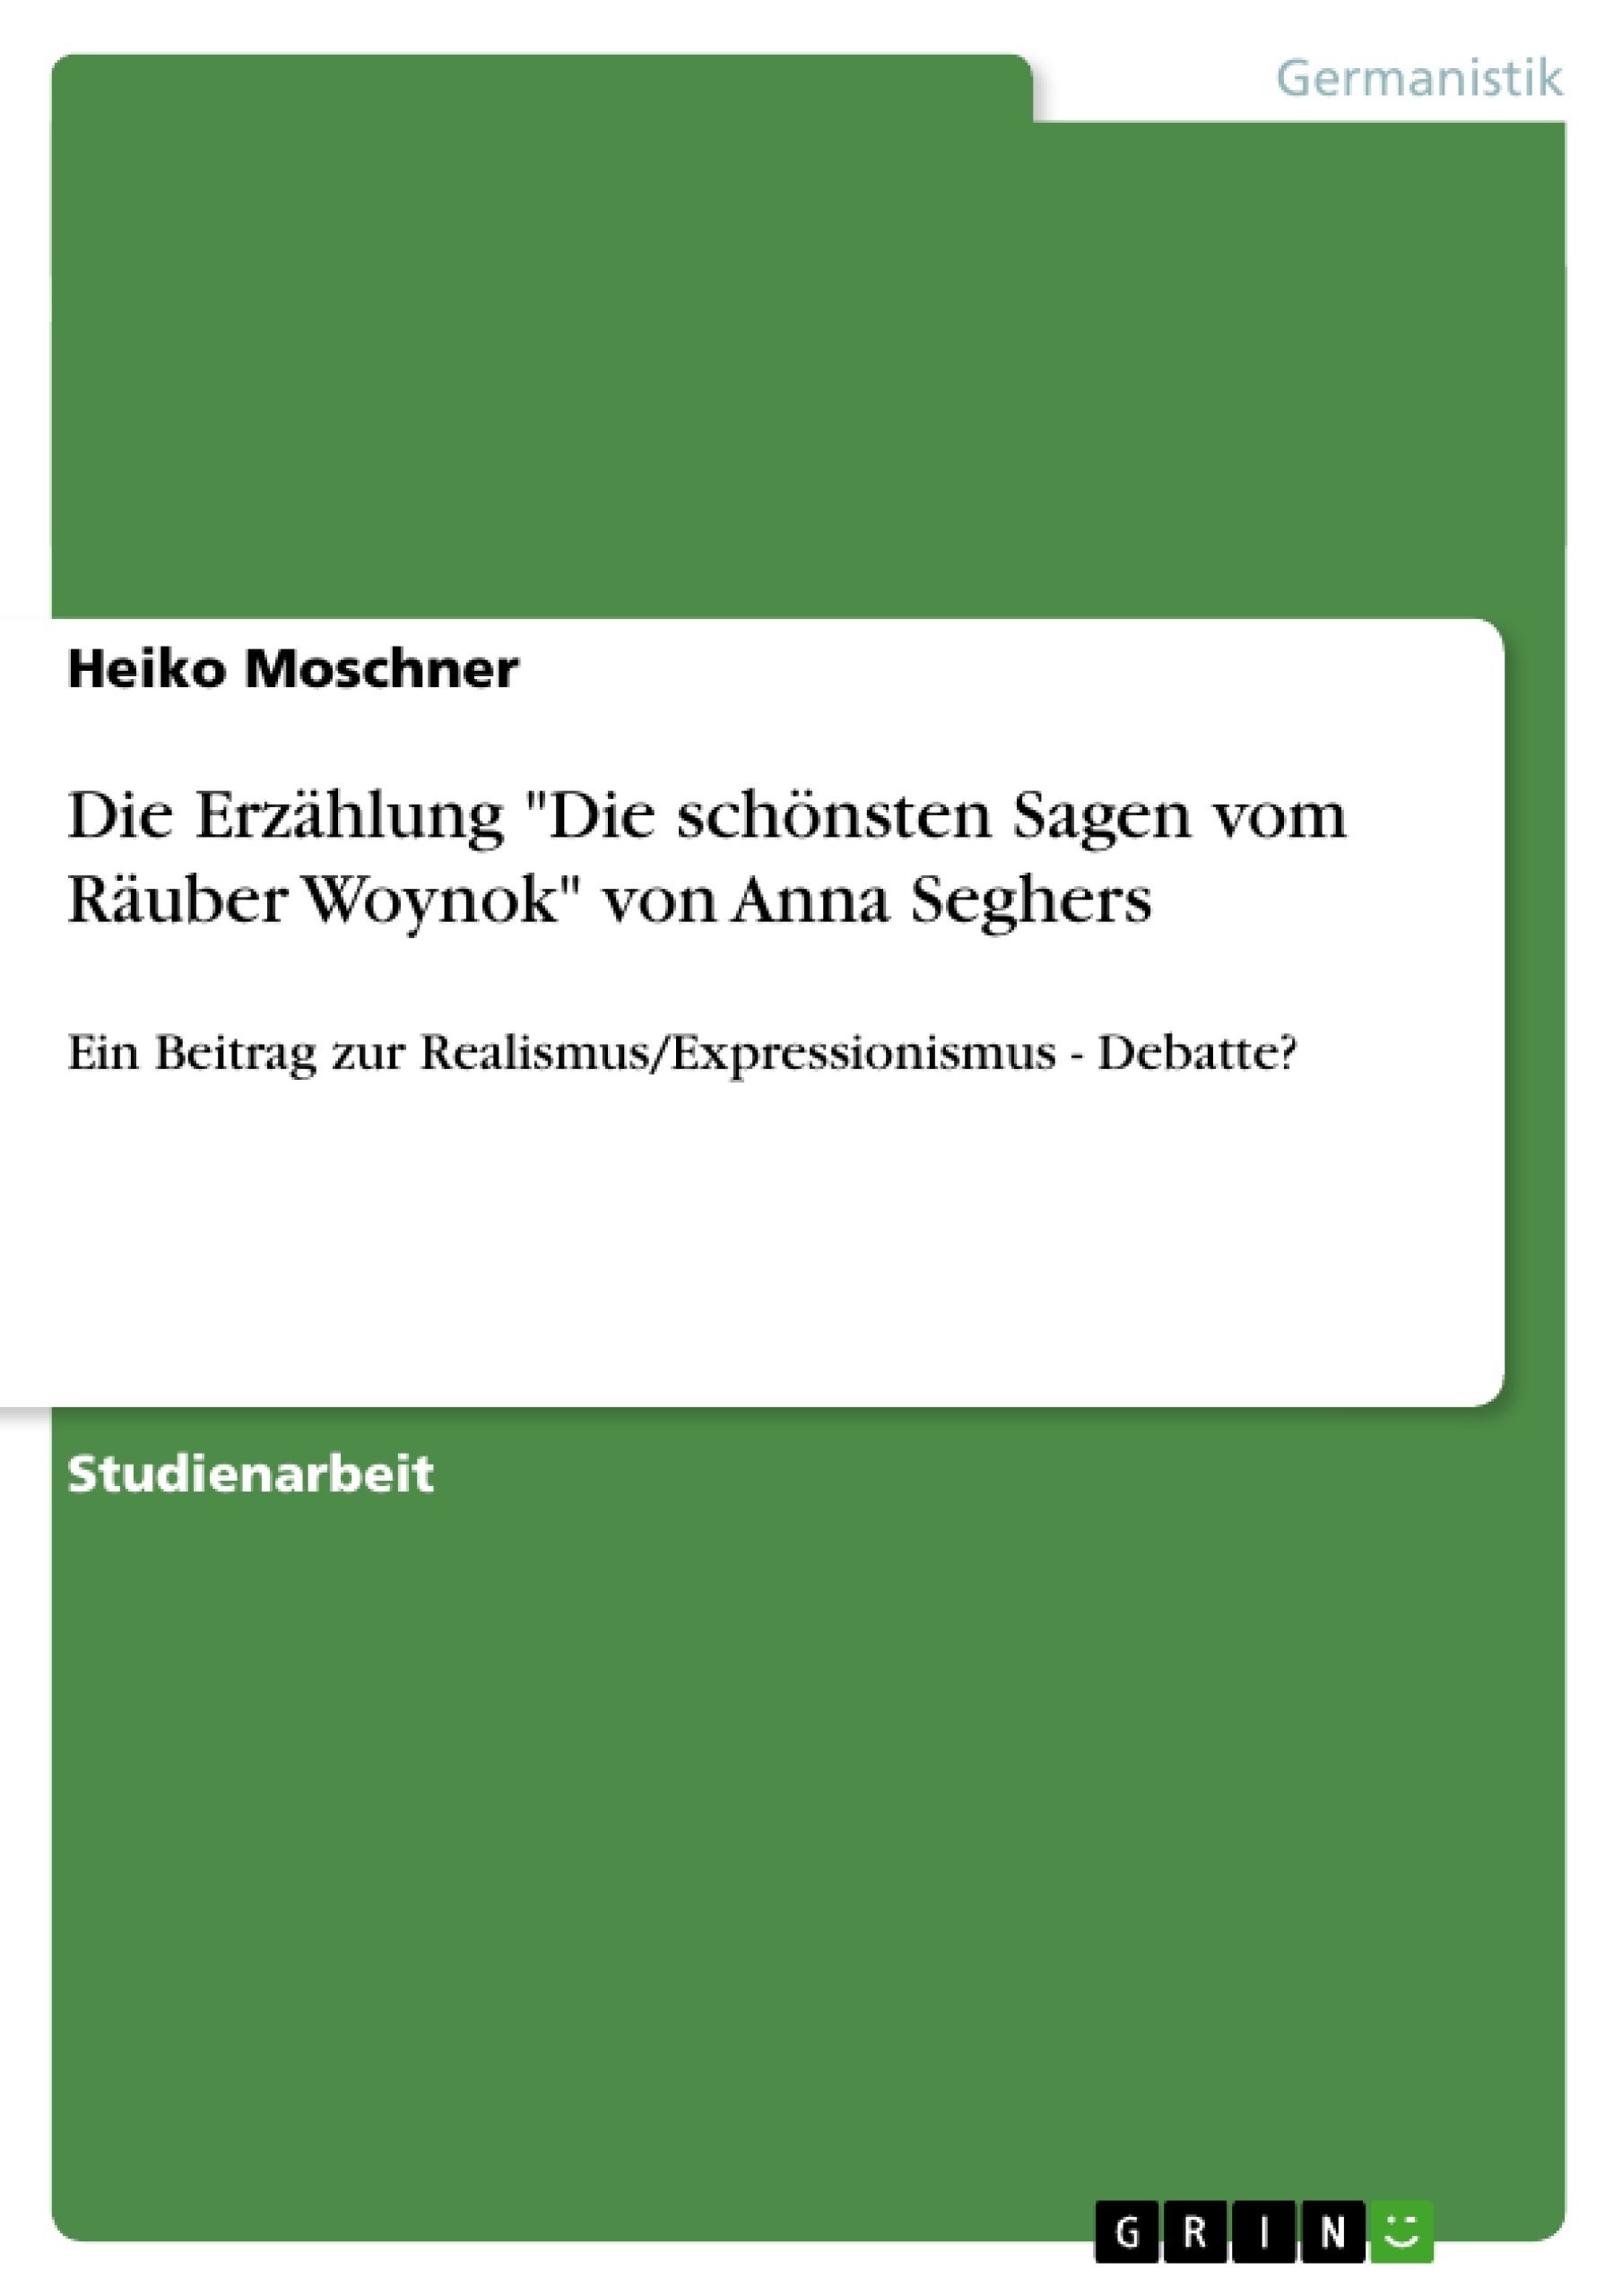 Titre: Die Erzählung "Die schönsten Sagen vom Räuber Woynok" von Anna Seghers